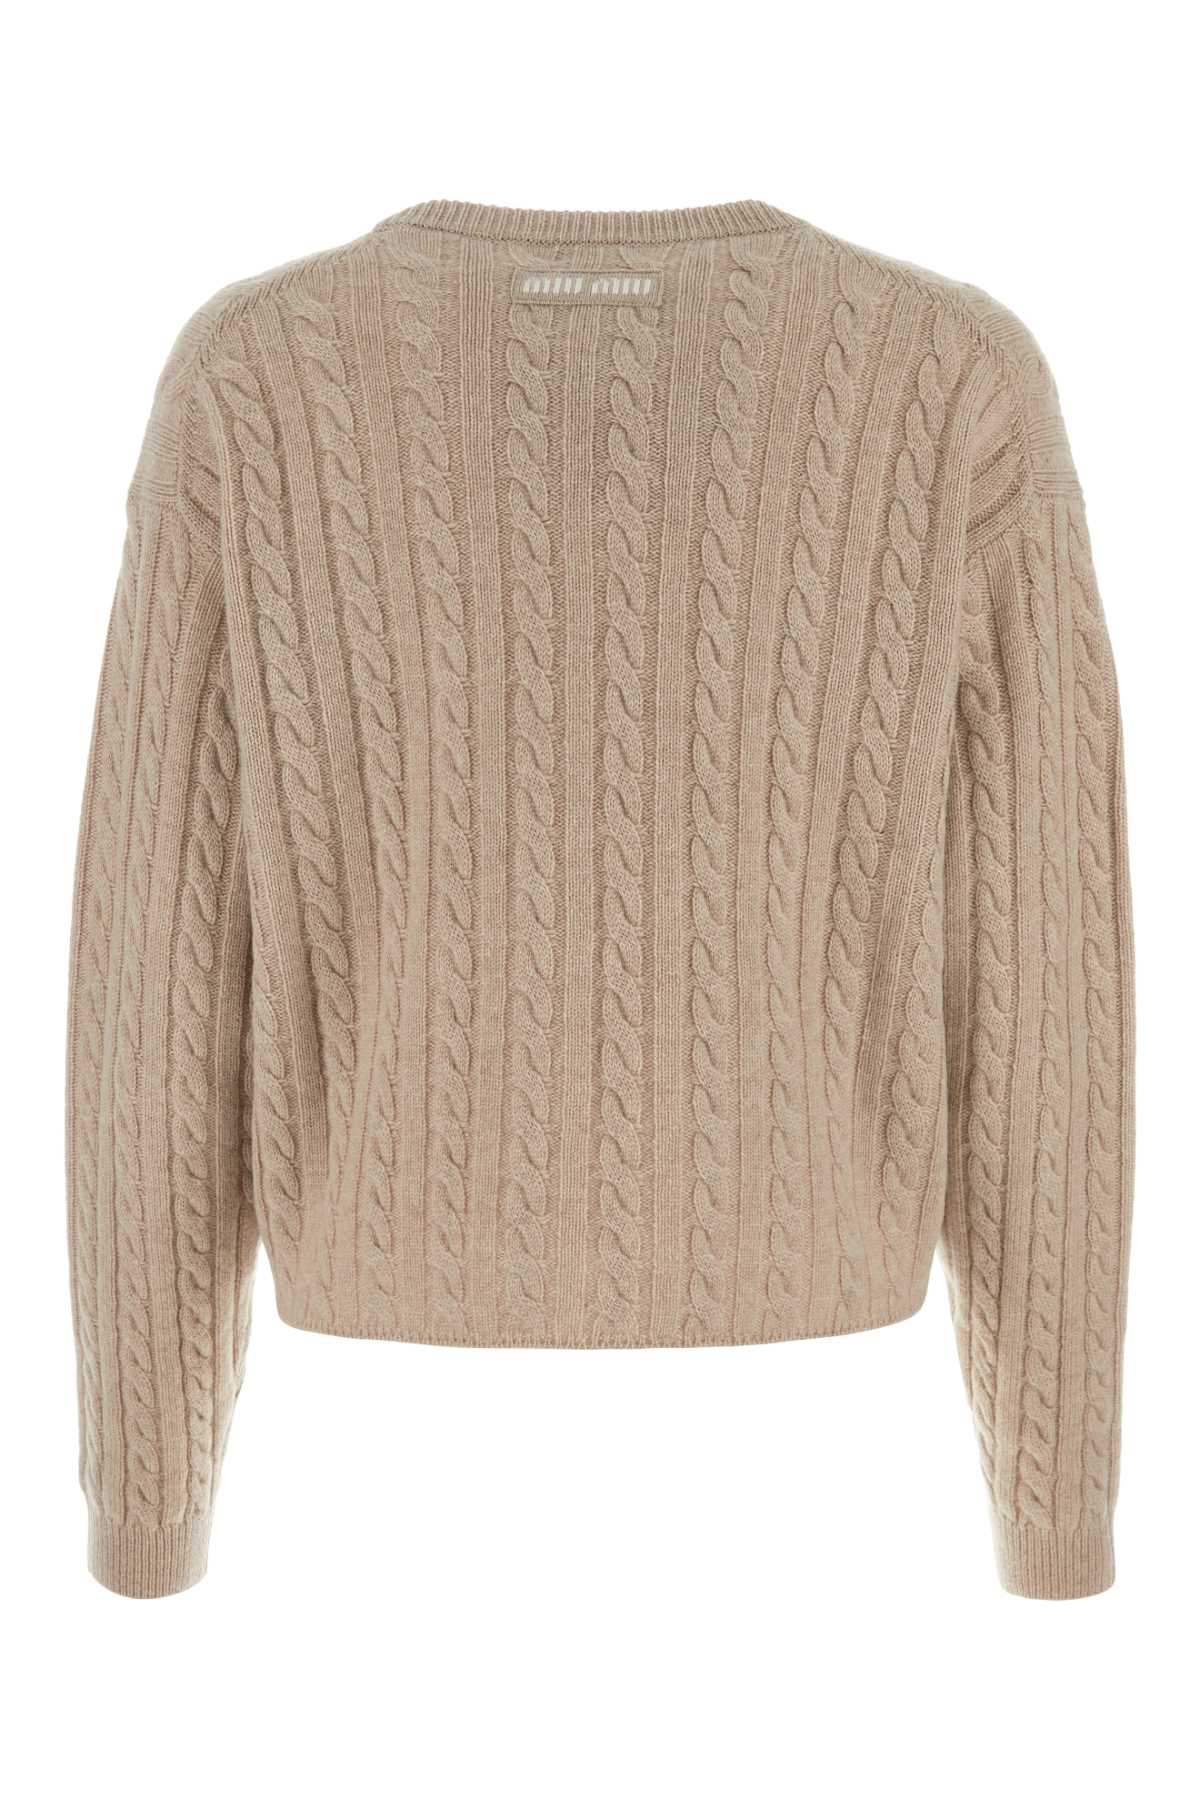 Shop Miu Miu Sand Cashmere Sweater In Calce